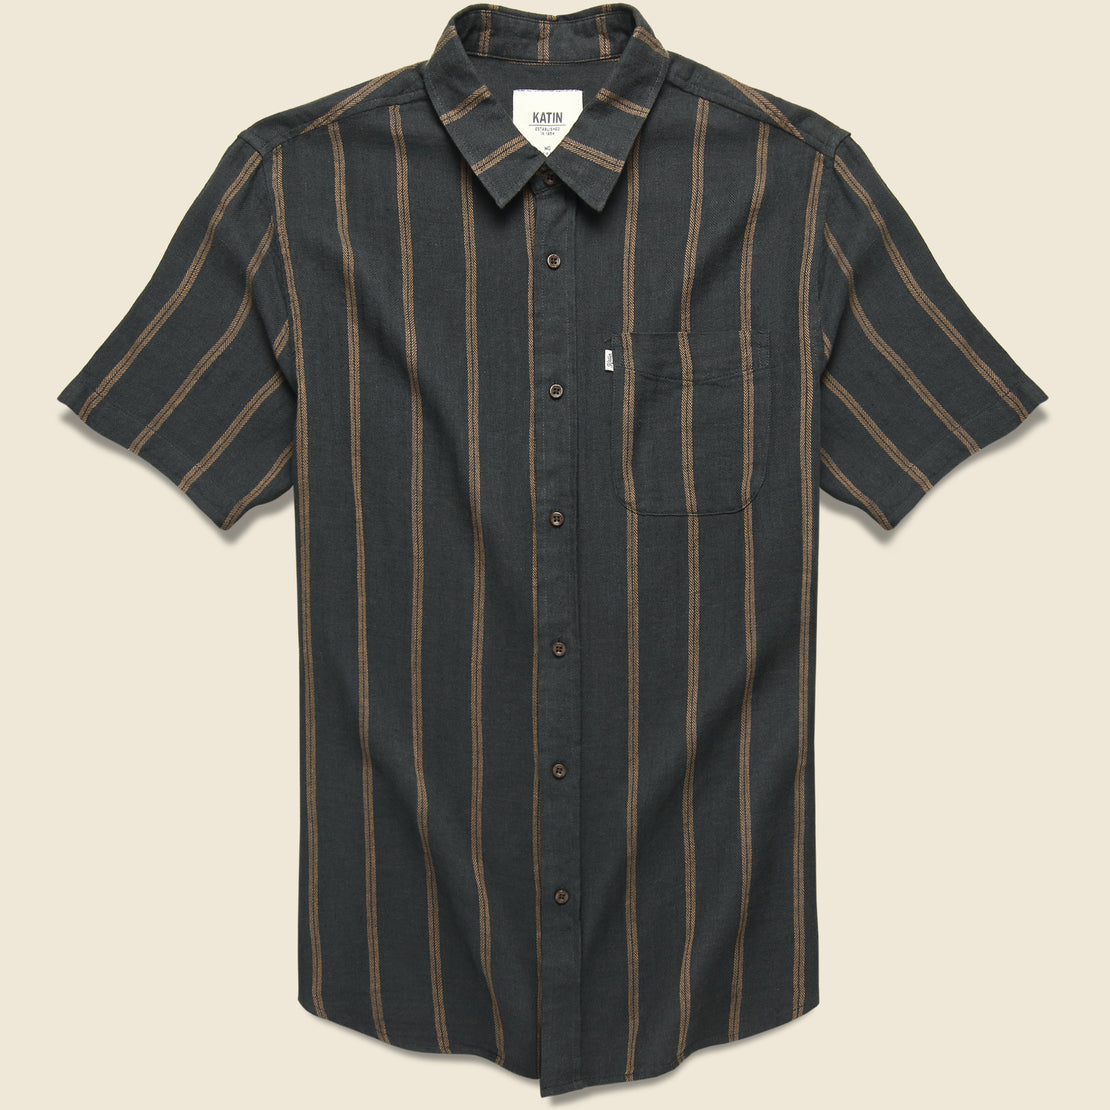 Katin Alan Stripe Shirt - Black Wash